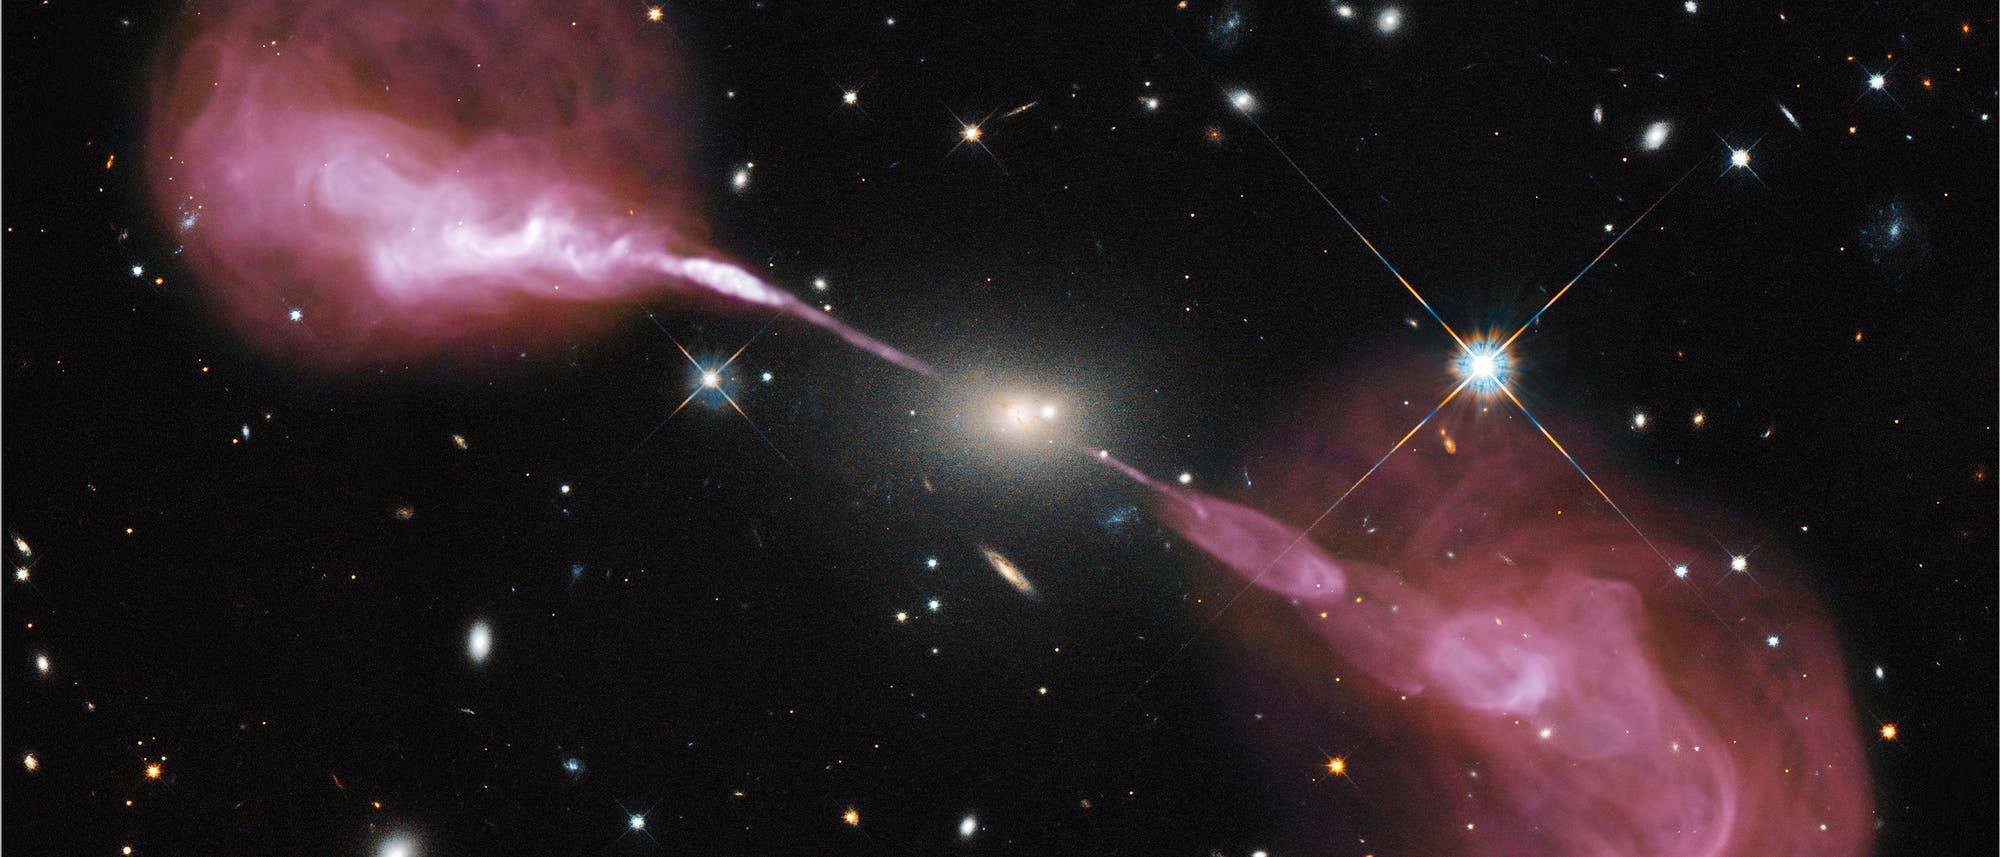 Die aktive Galaxie Hercules A zeigt spektakuläre Jets